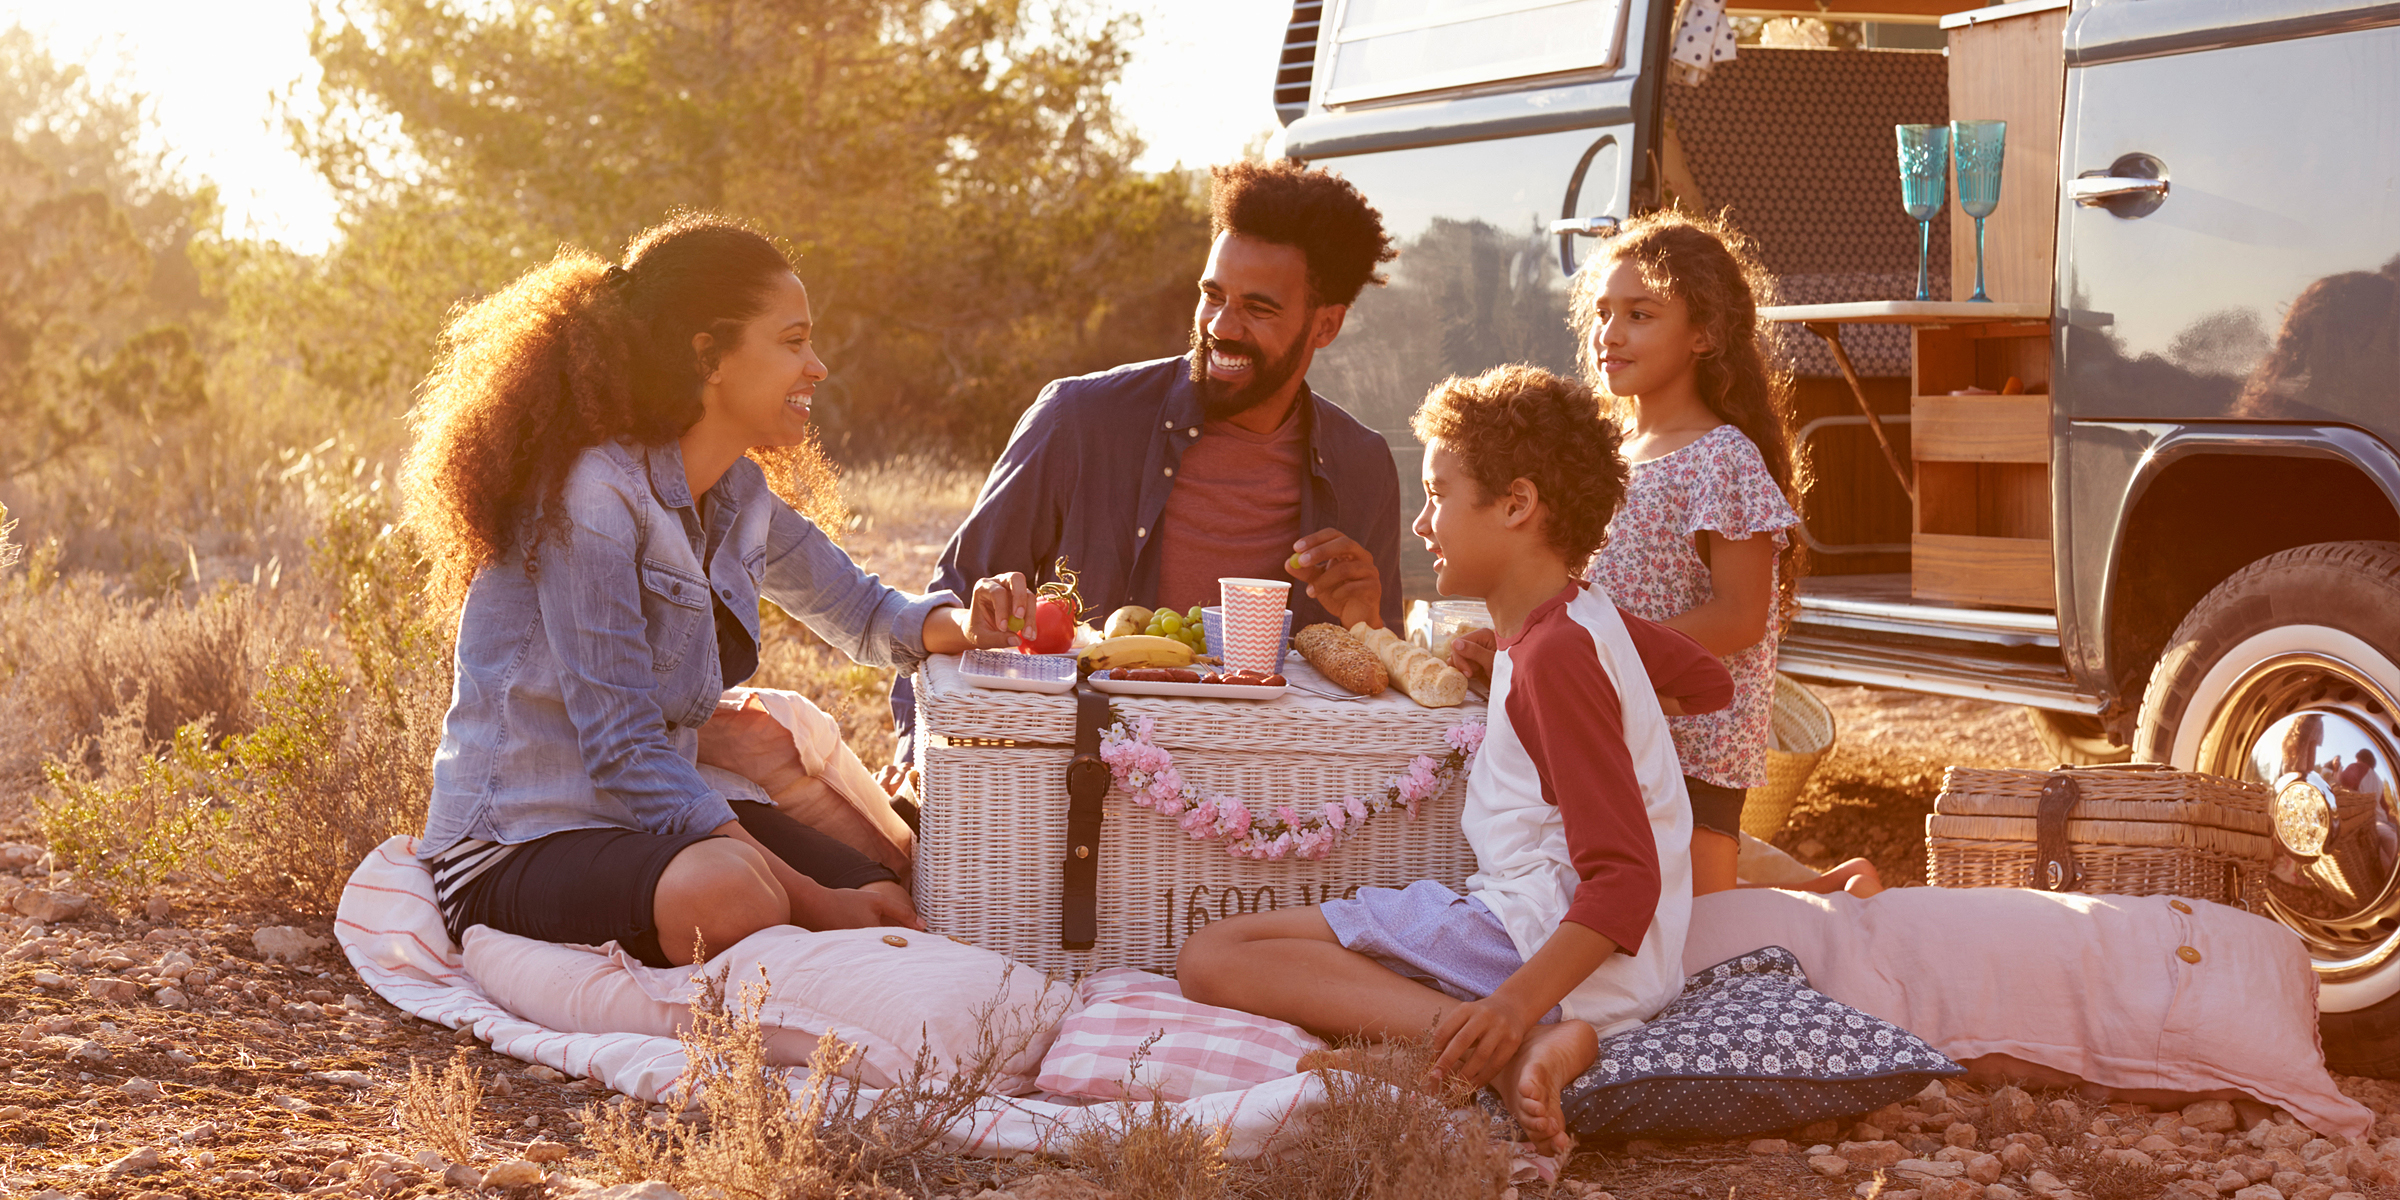 A family enjoying a camping trip | Source: Shutterstock